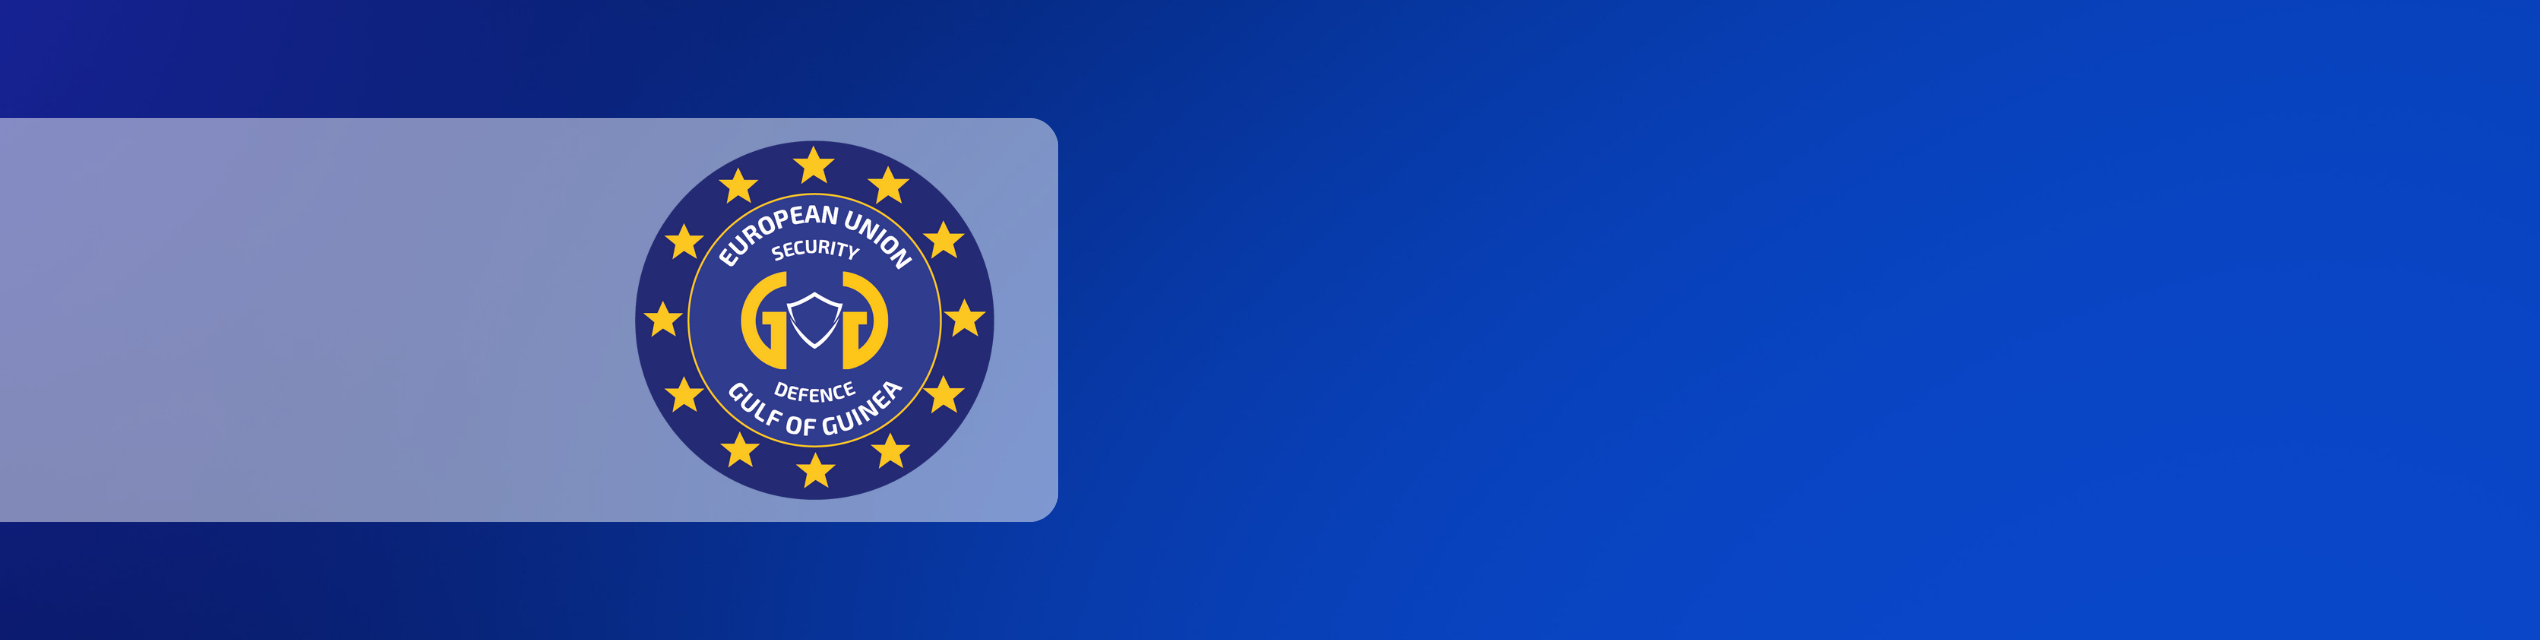 Website Banner w logo EU SDI Gulf of Guinea